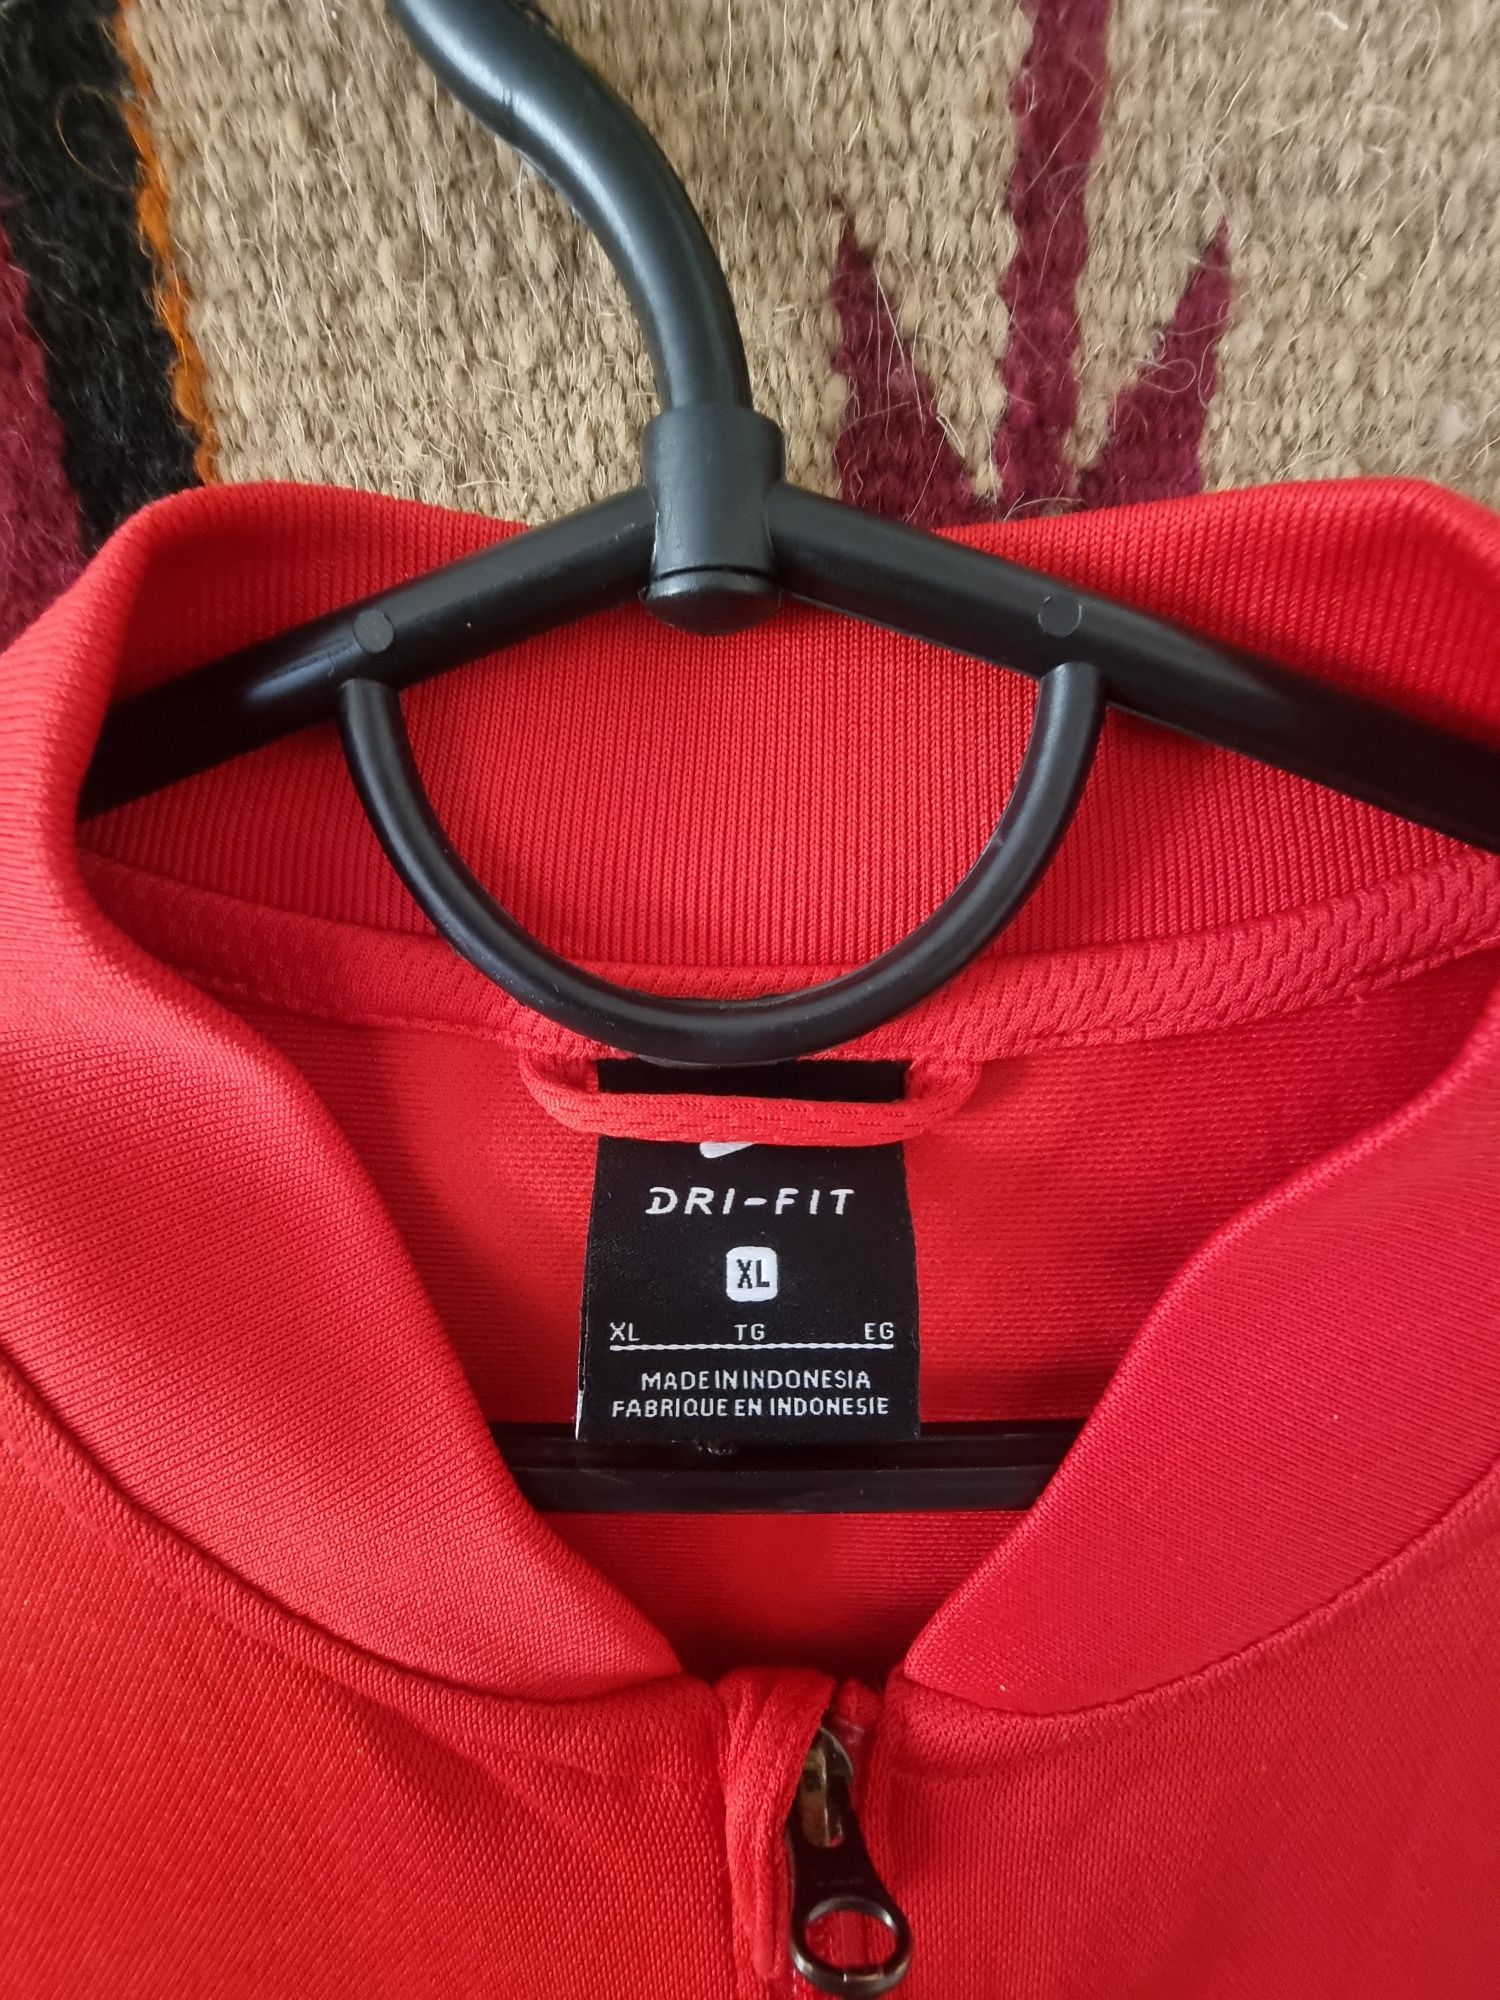 Nike Dri Fit /red/ size XL